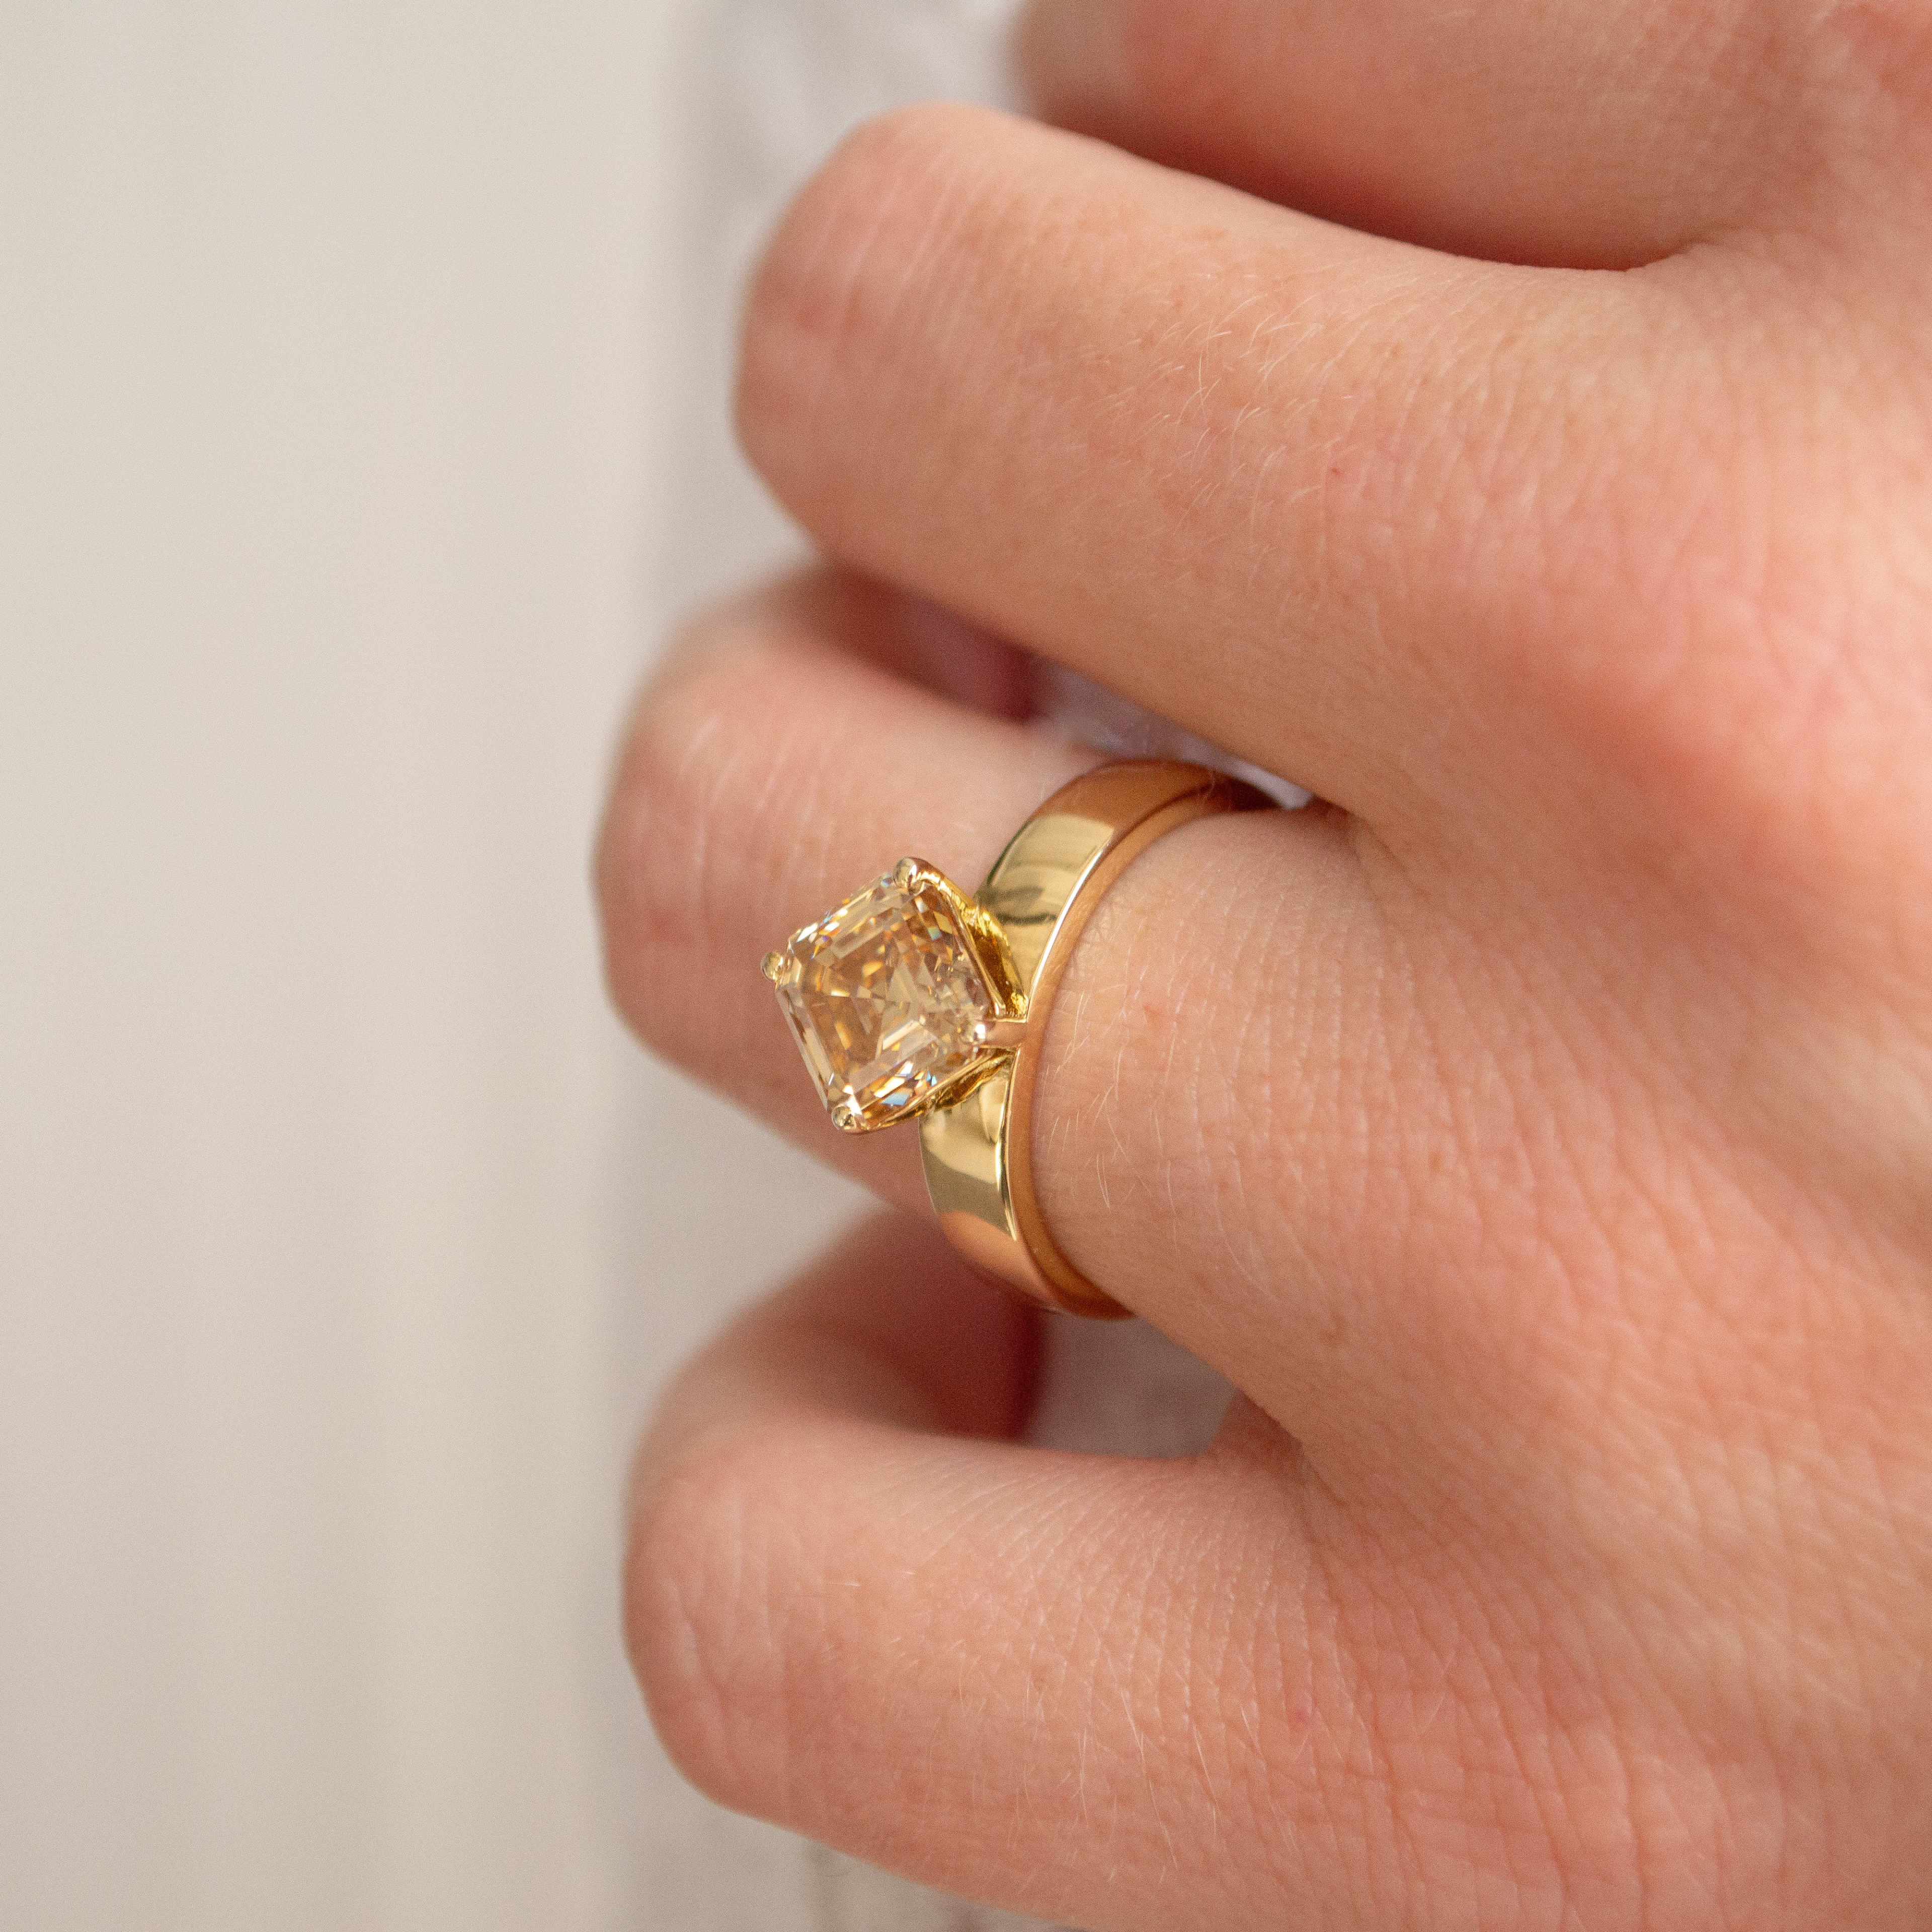 2 carat Asscher cut yellow diamond on a 14K thick yellow gold ring